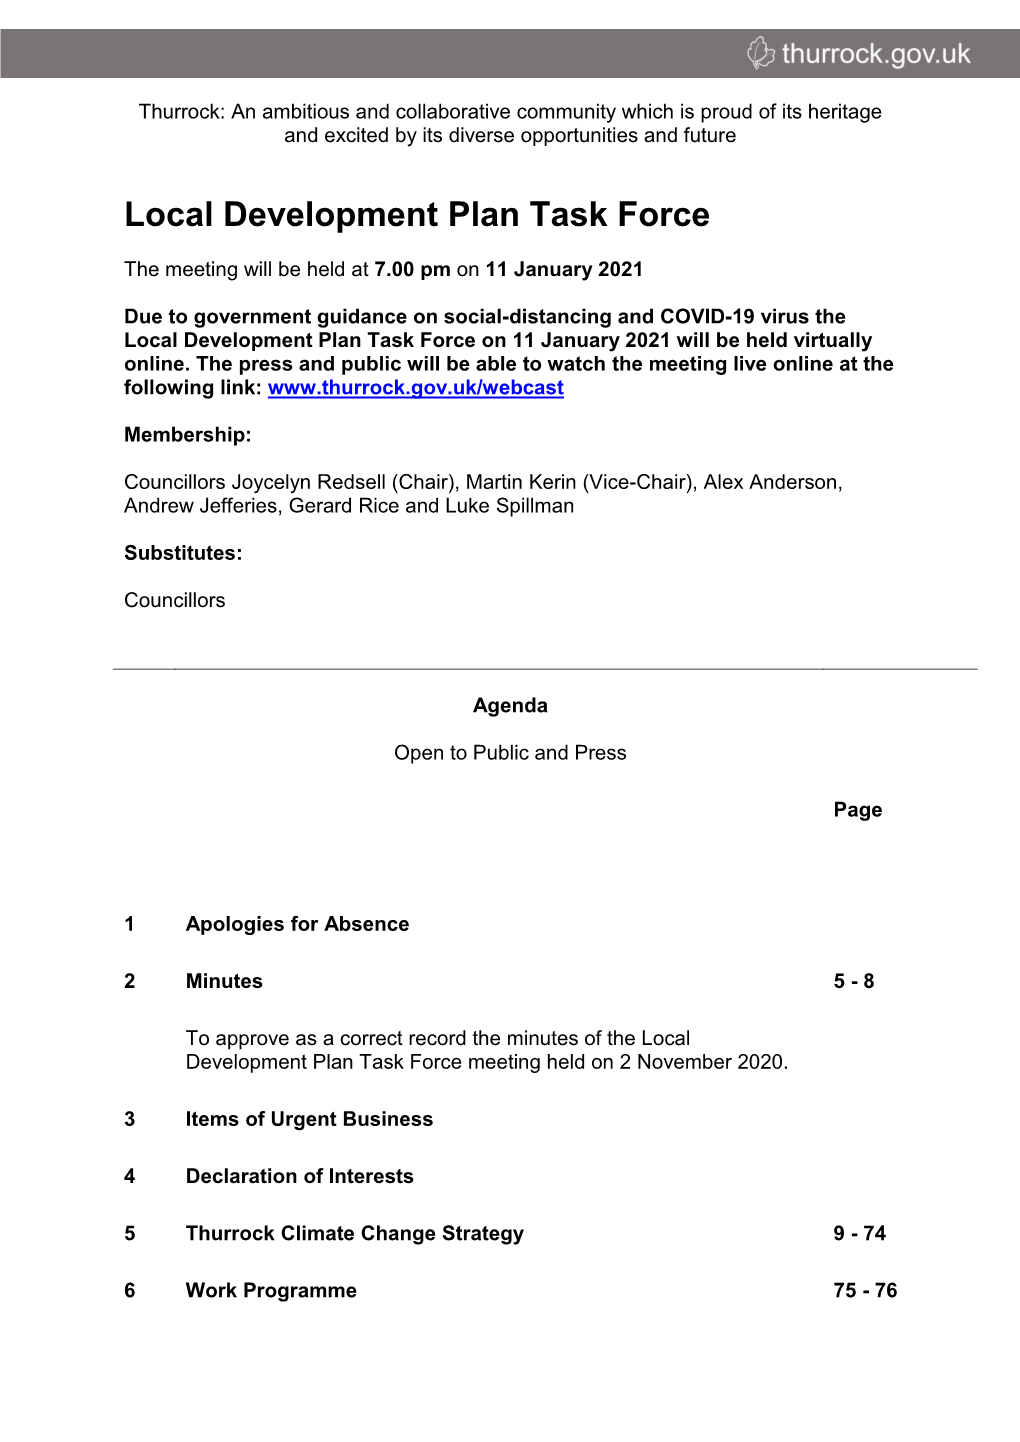 (Public Pack)Agenda Document for Local Development Plan Task